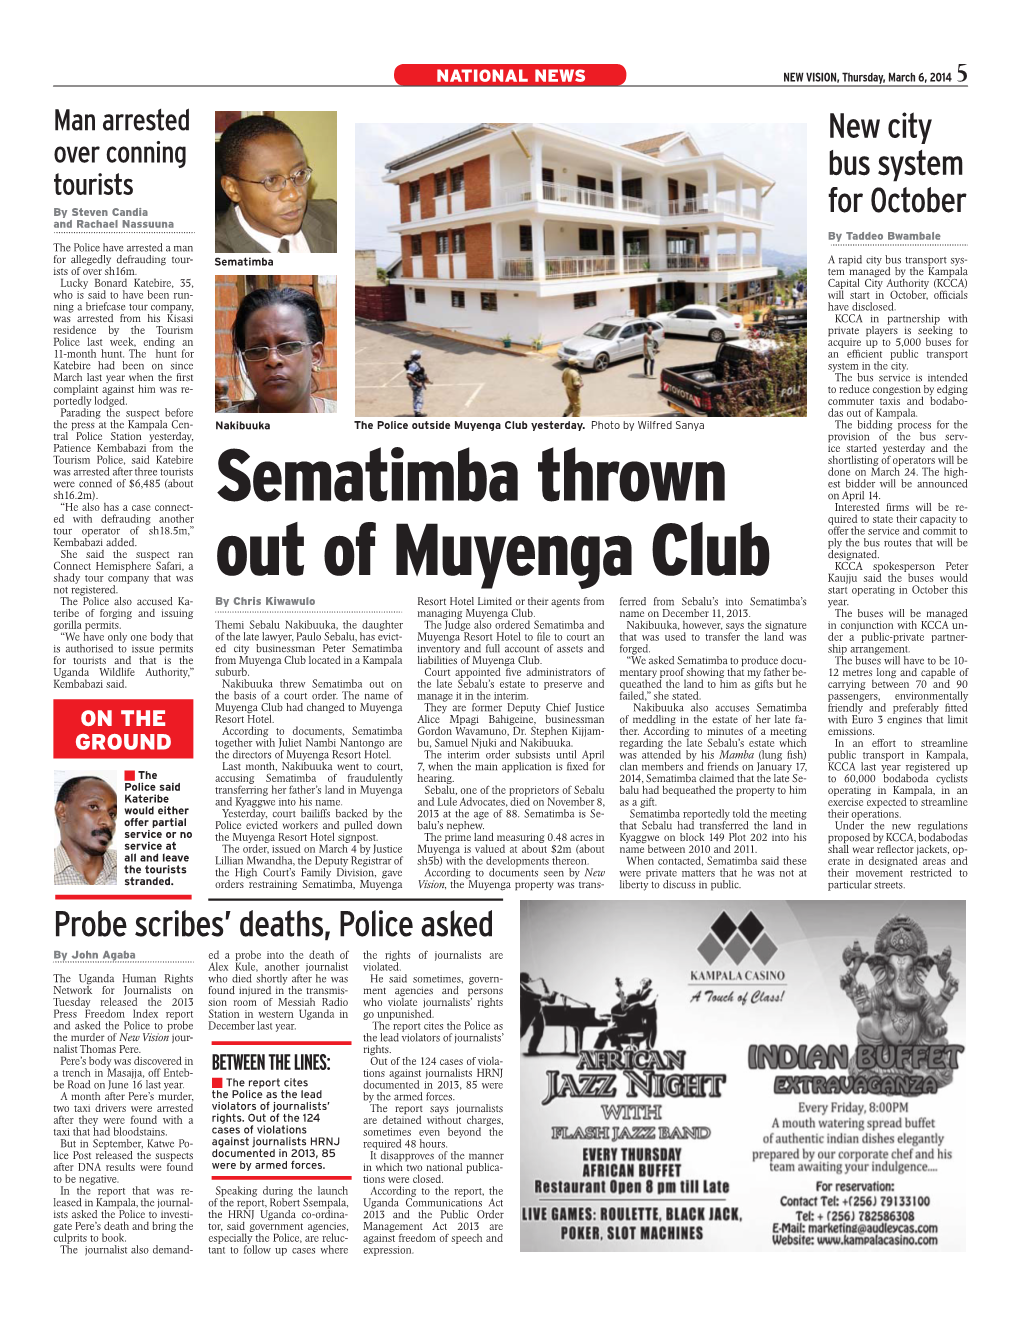 Sematimba Thrown out of Muyenga Club